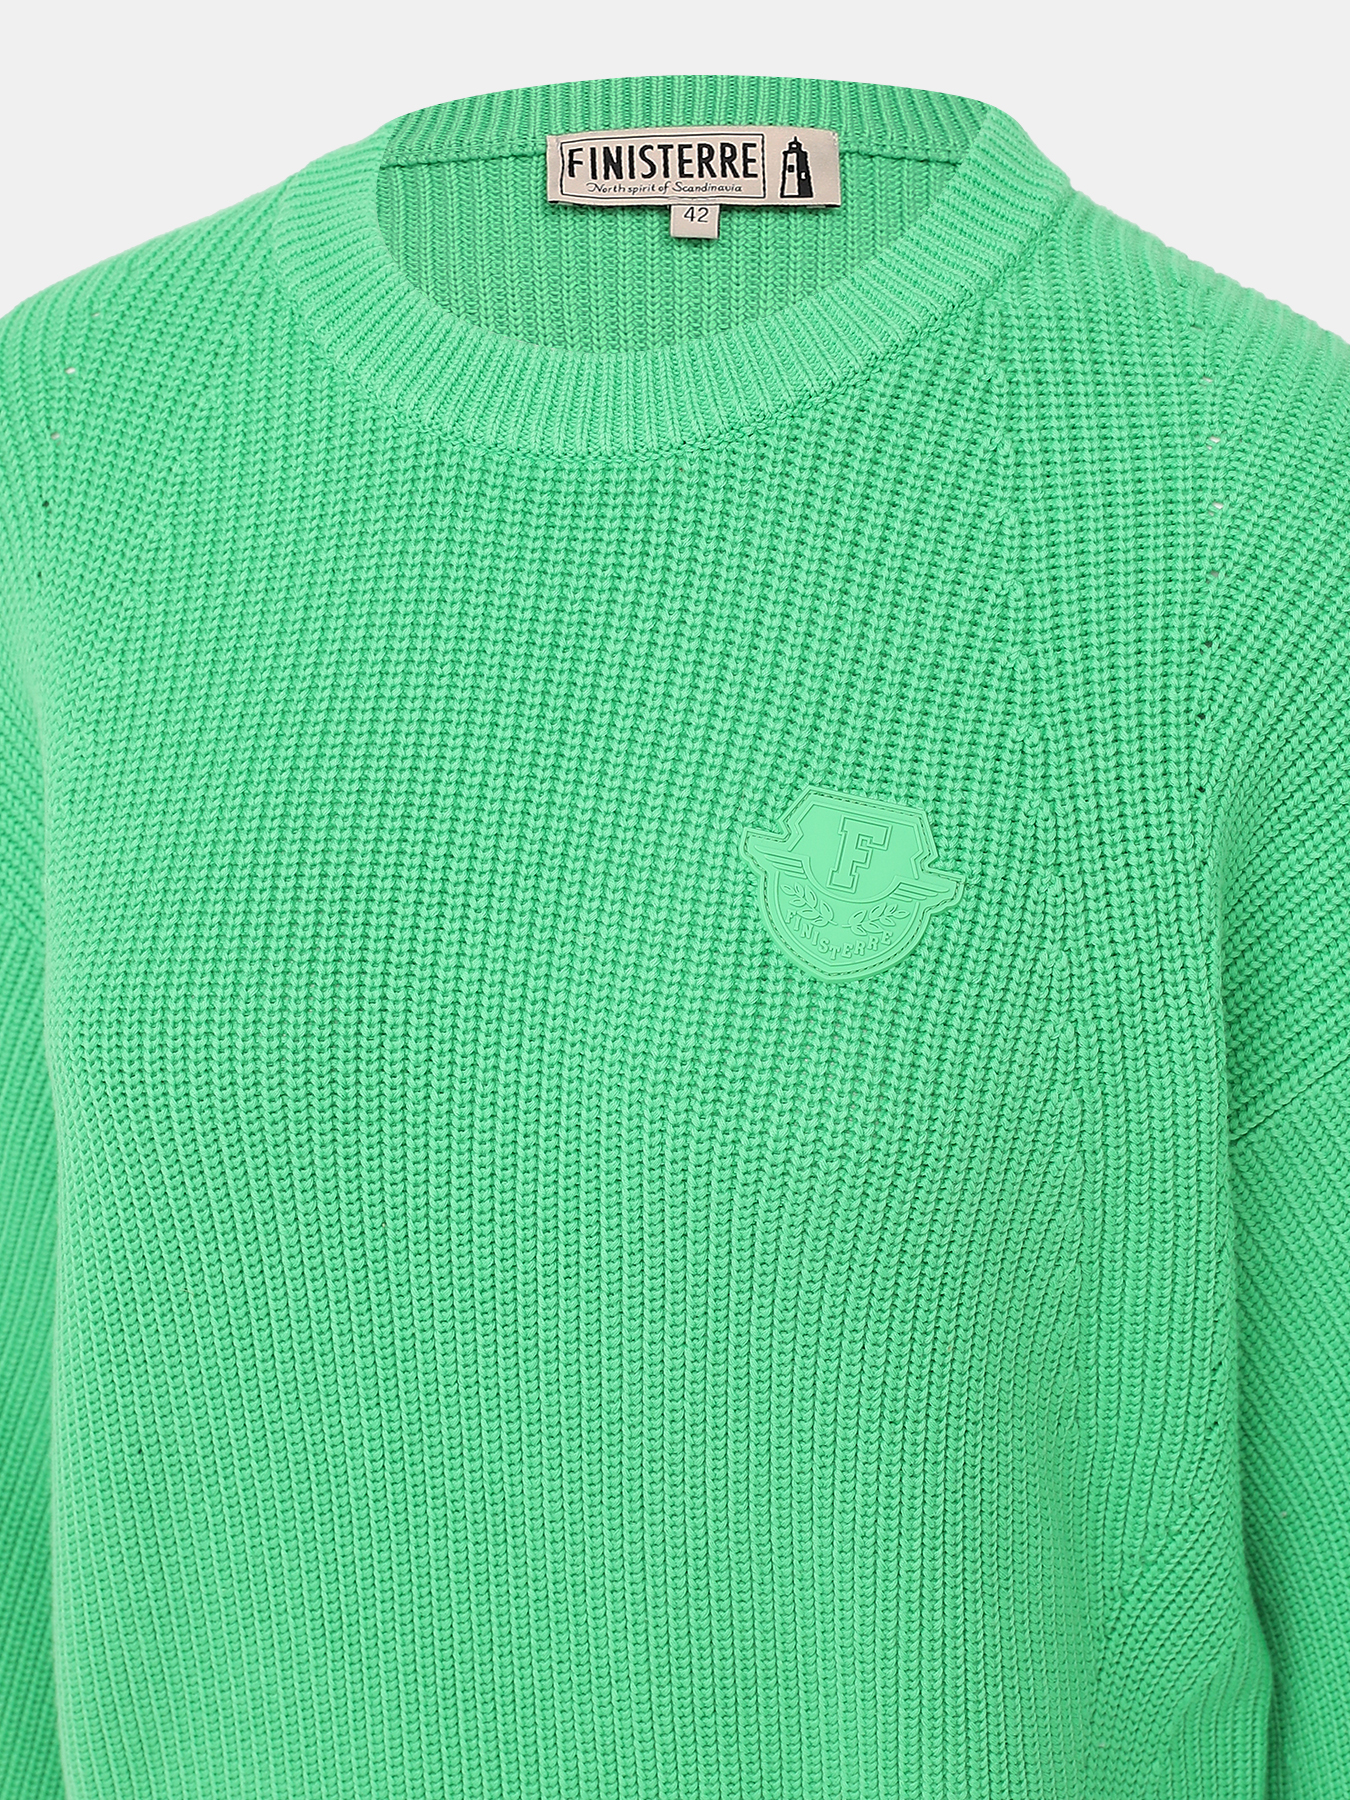 Джемпер Finisterre 419143-021, цвет зеленый, размер 42 - фото 2